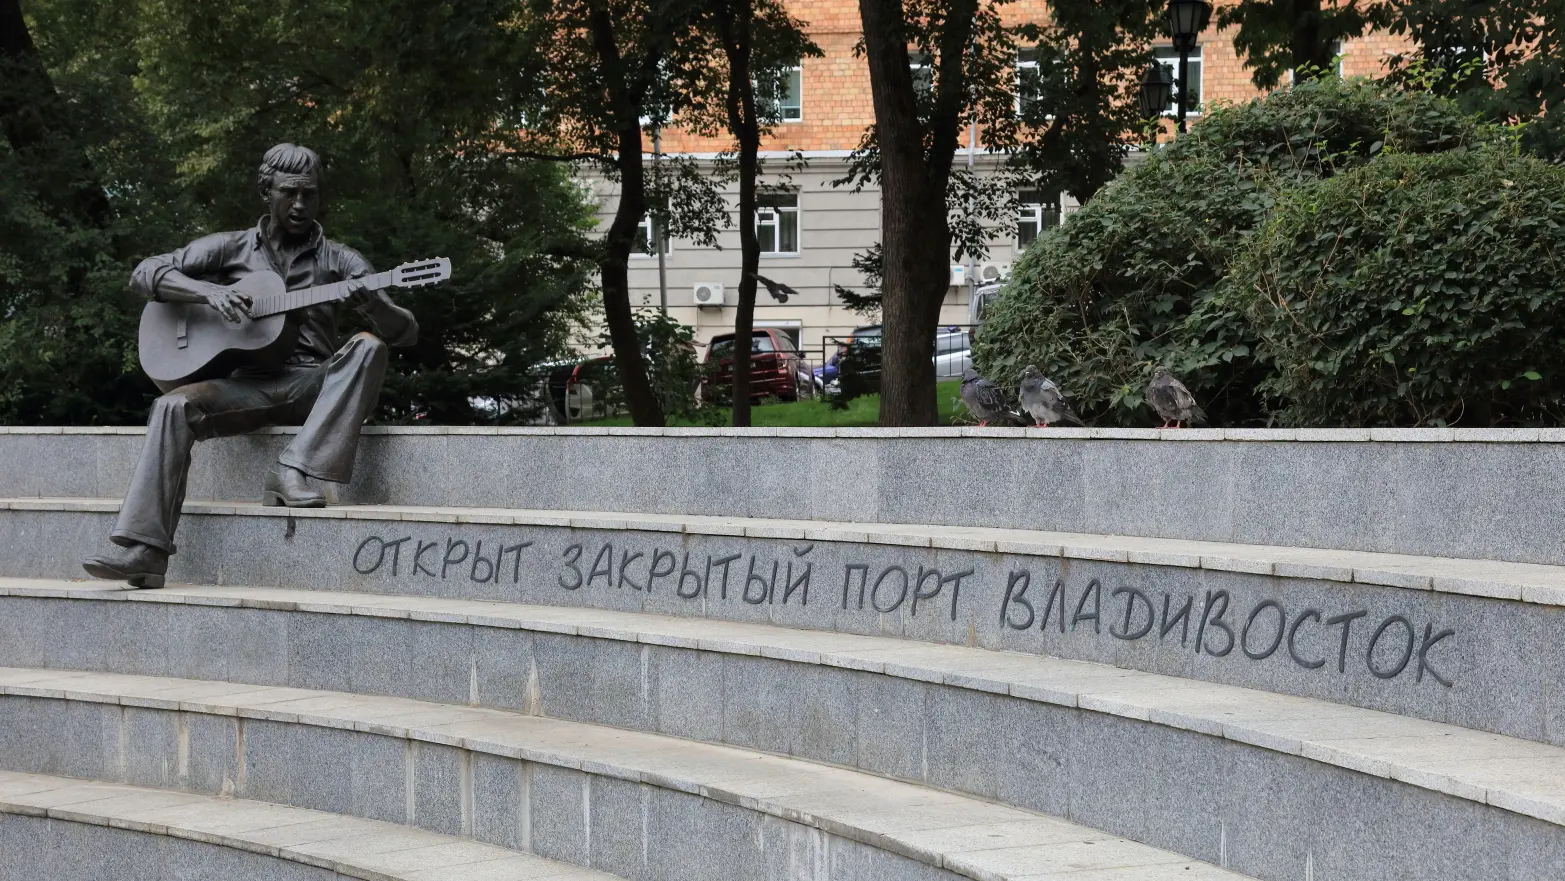 socha Vladimira Vysockého s citátem v ruštině